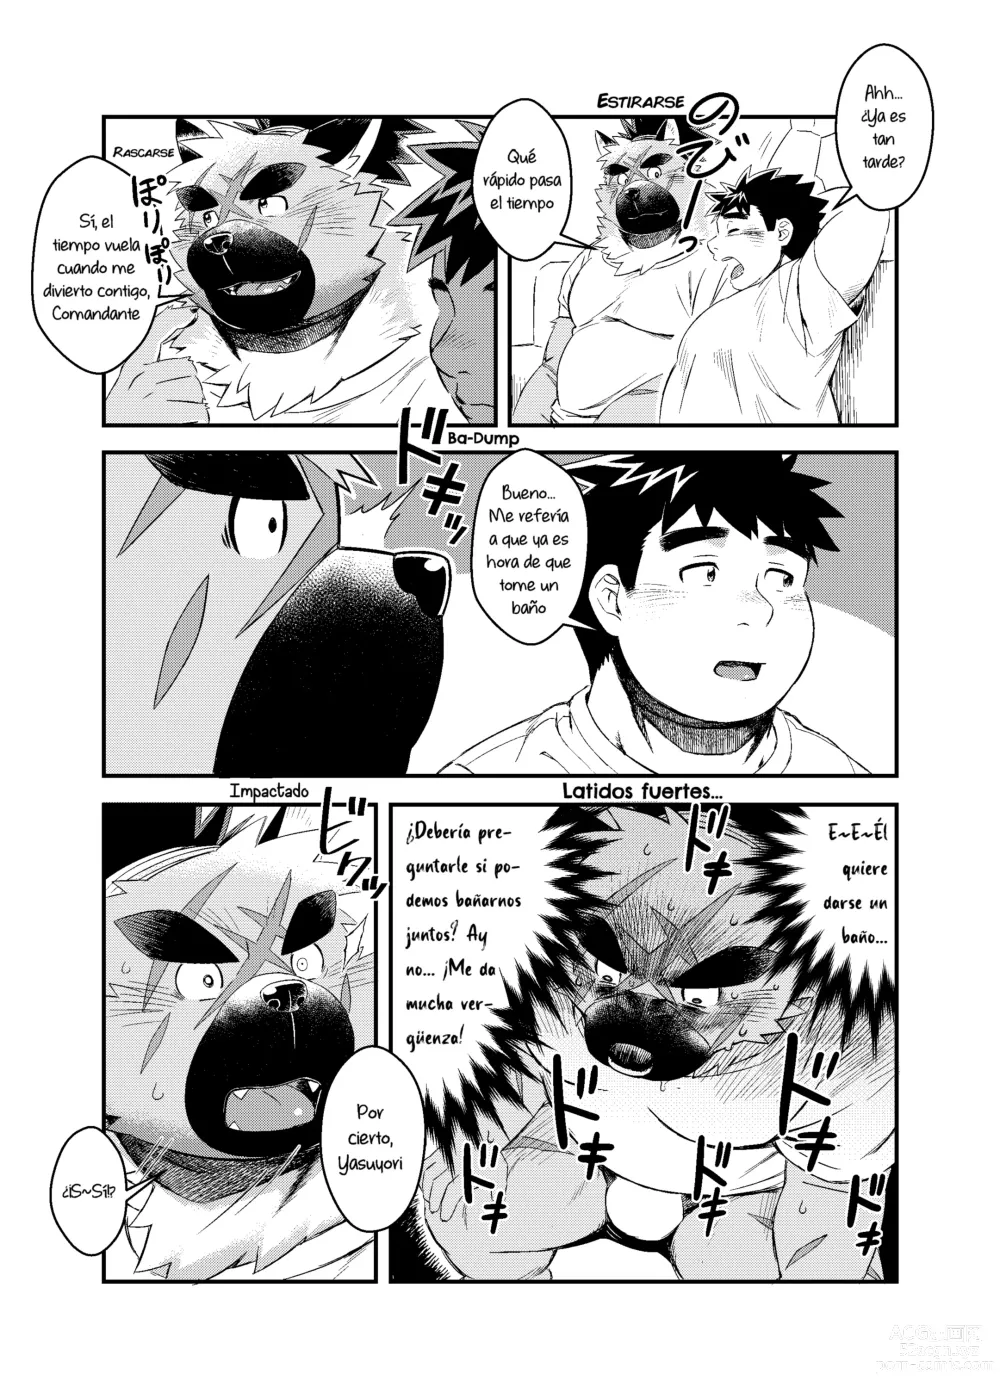 Page 7 of doujinshi Aquella vez que tomé la medicina incorrecta cuando estaba de visita en la casa del Comandante.